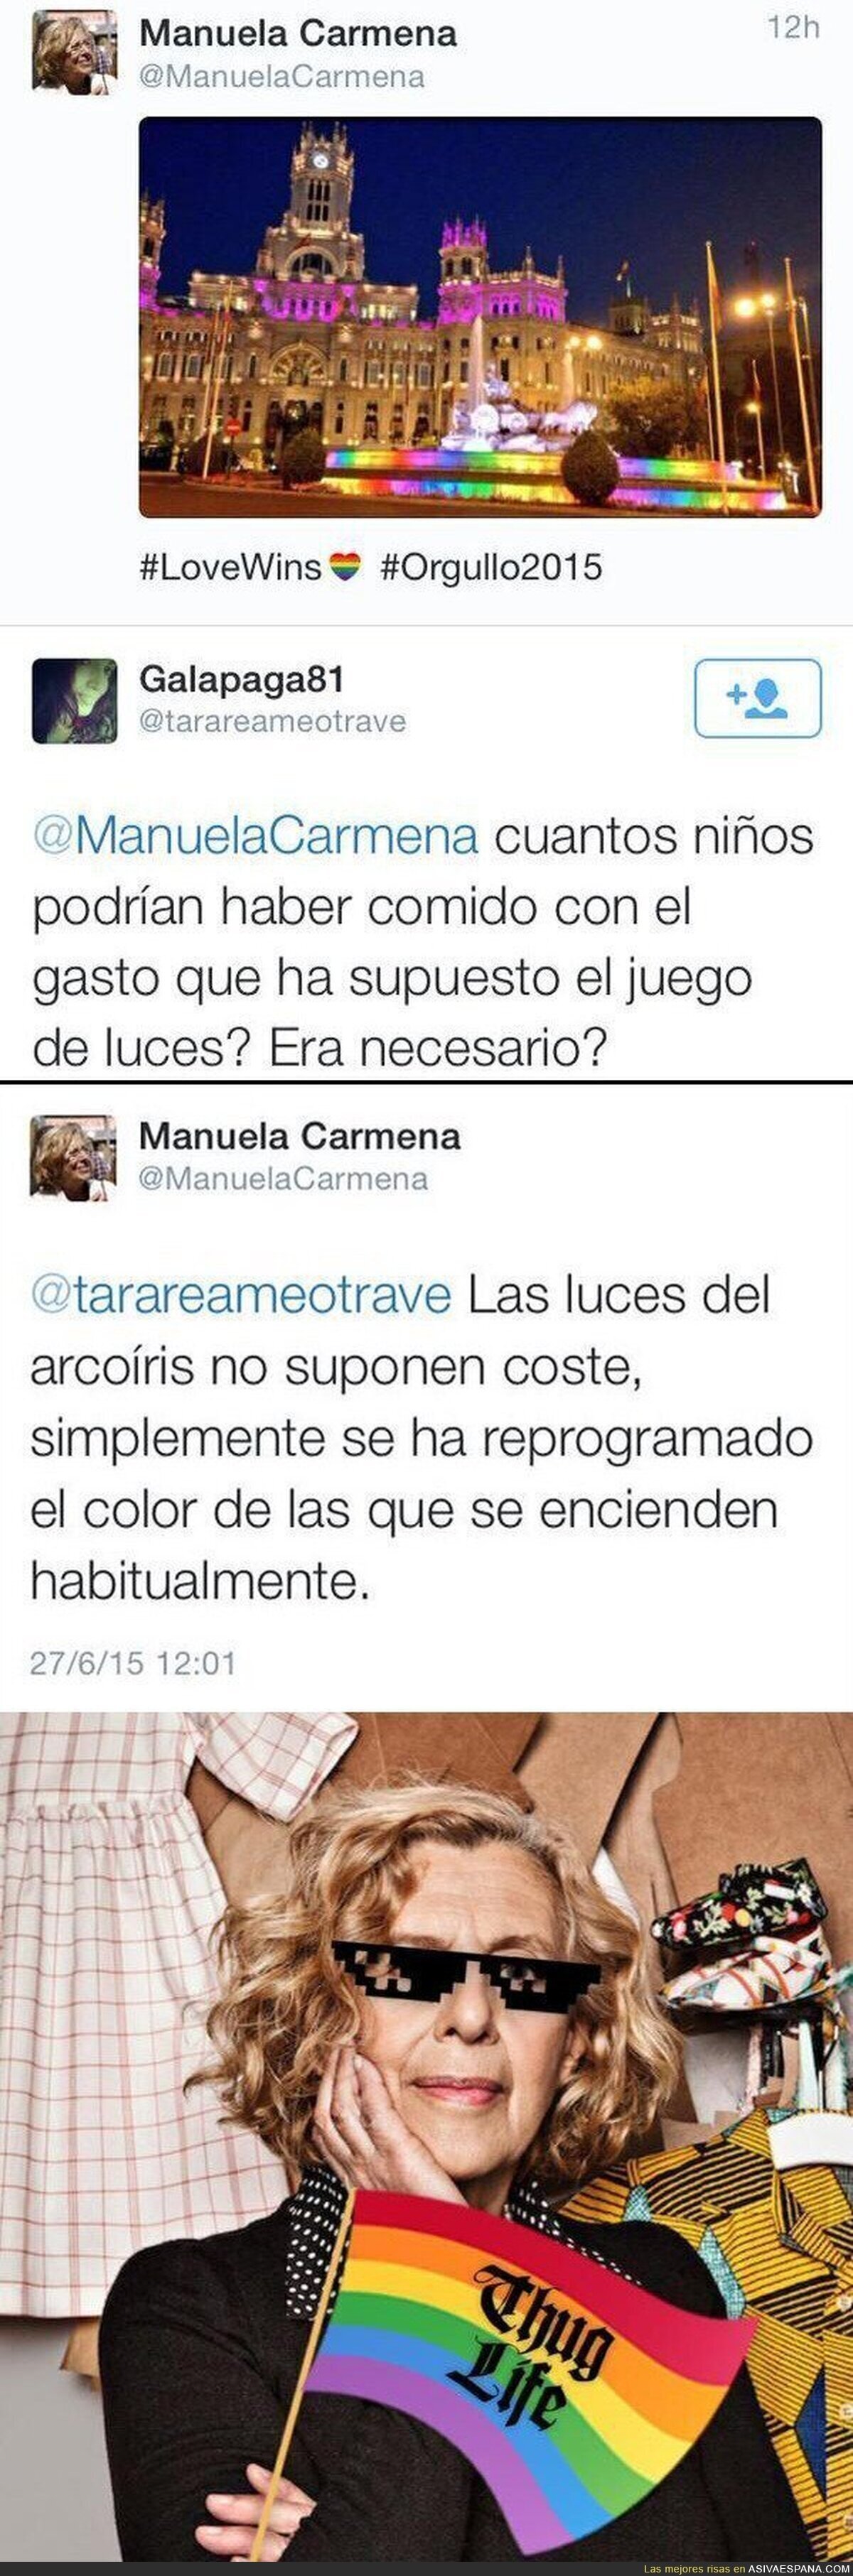 Manuela Carmena repartiendo por Twitter a los haters